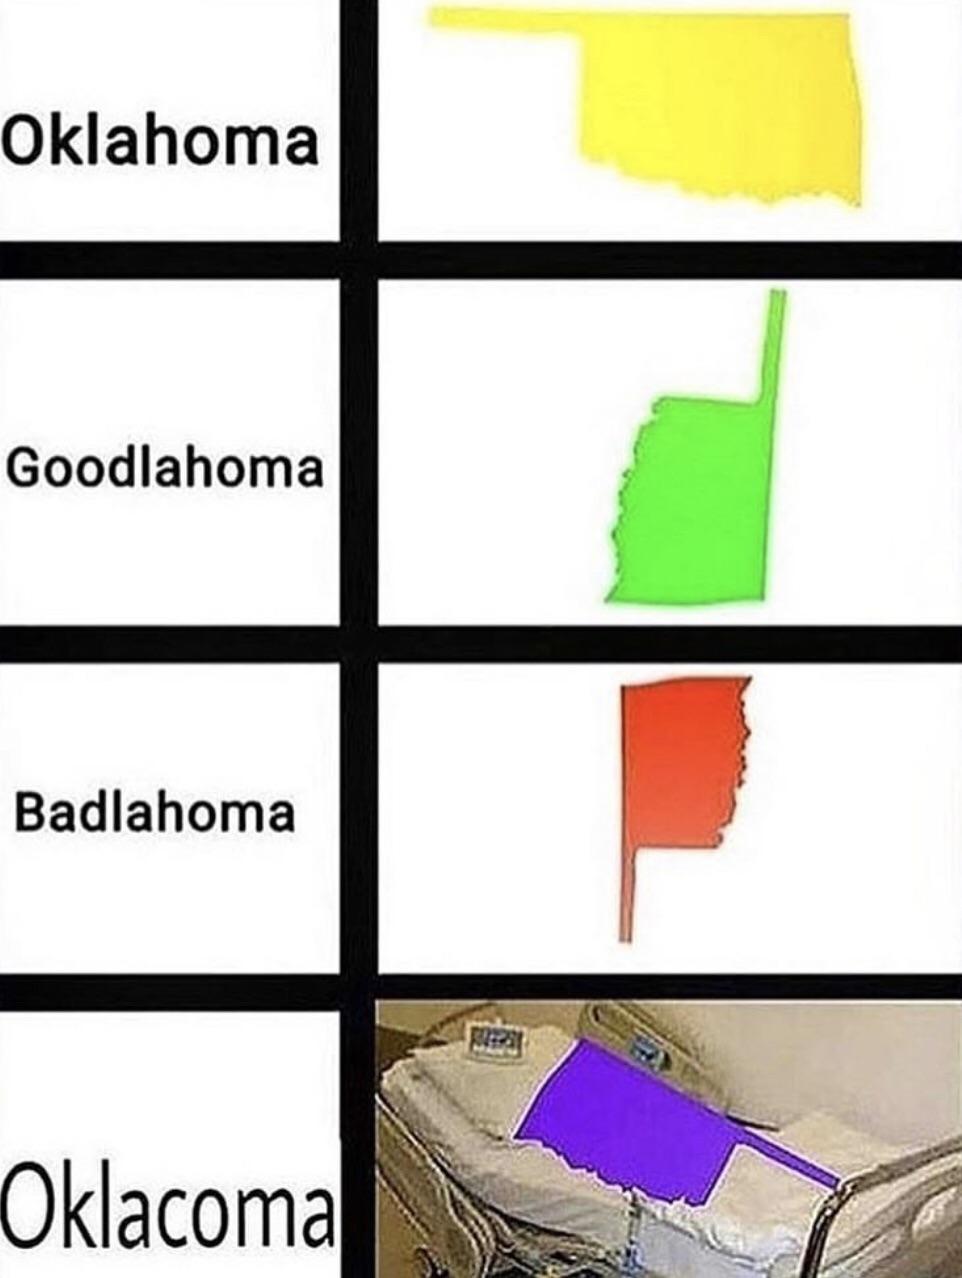 oklacoma meme - Oklahoma Goodlahoma Badlahoma Oklacoma